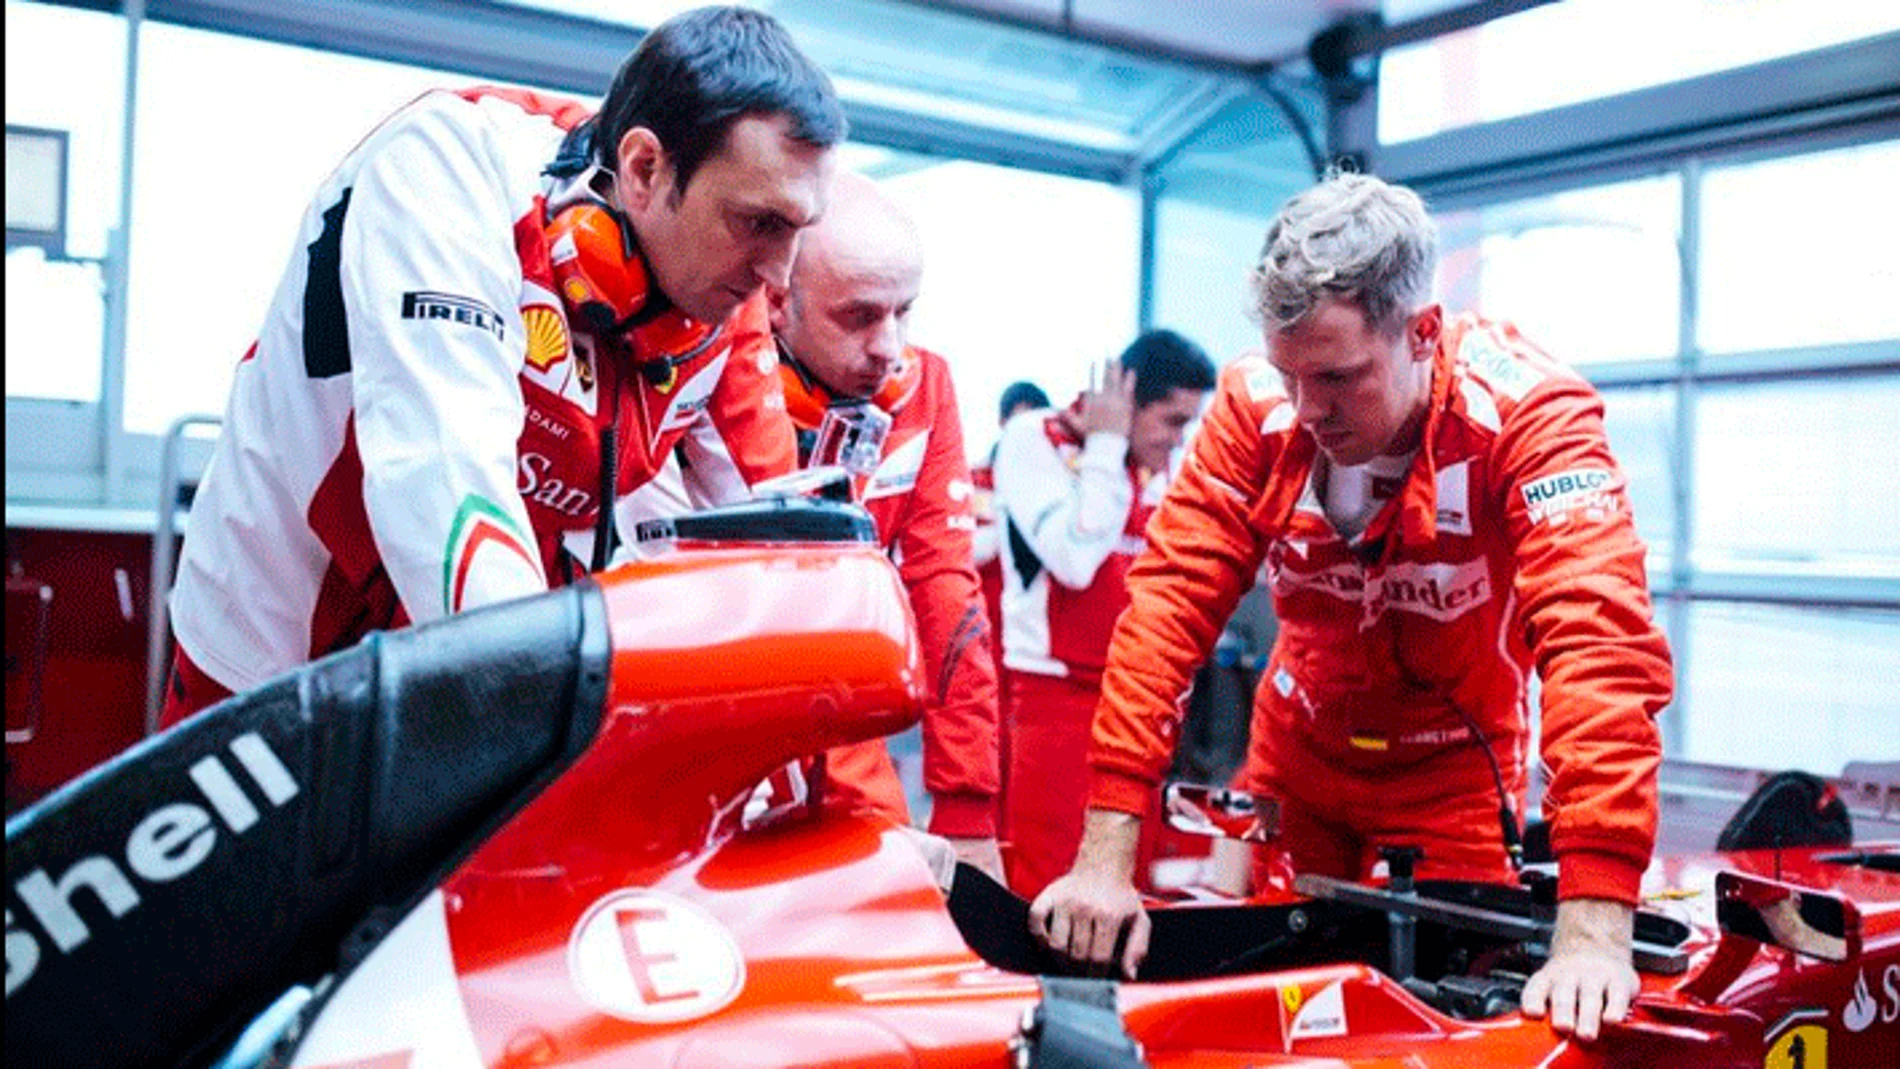 Sebastian Vettel se estrena con Ferrari